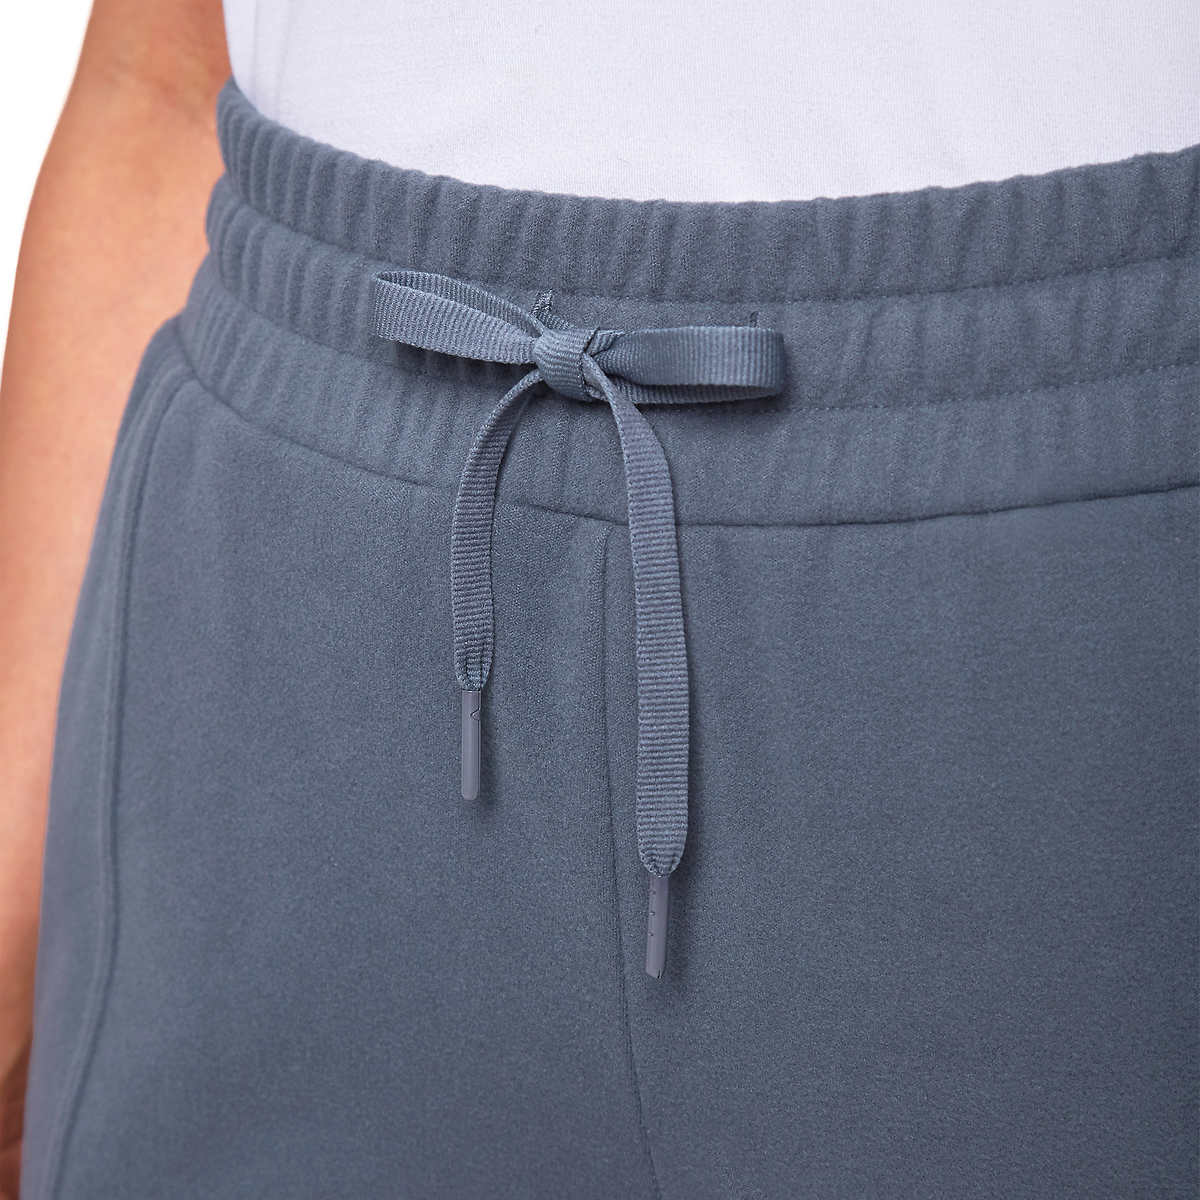 Mondetta Women's High Waist Active Pants Side Pockets Soft Fleece Joggers